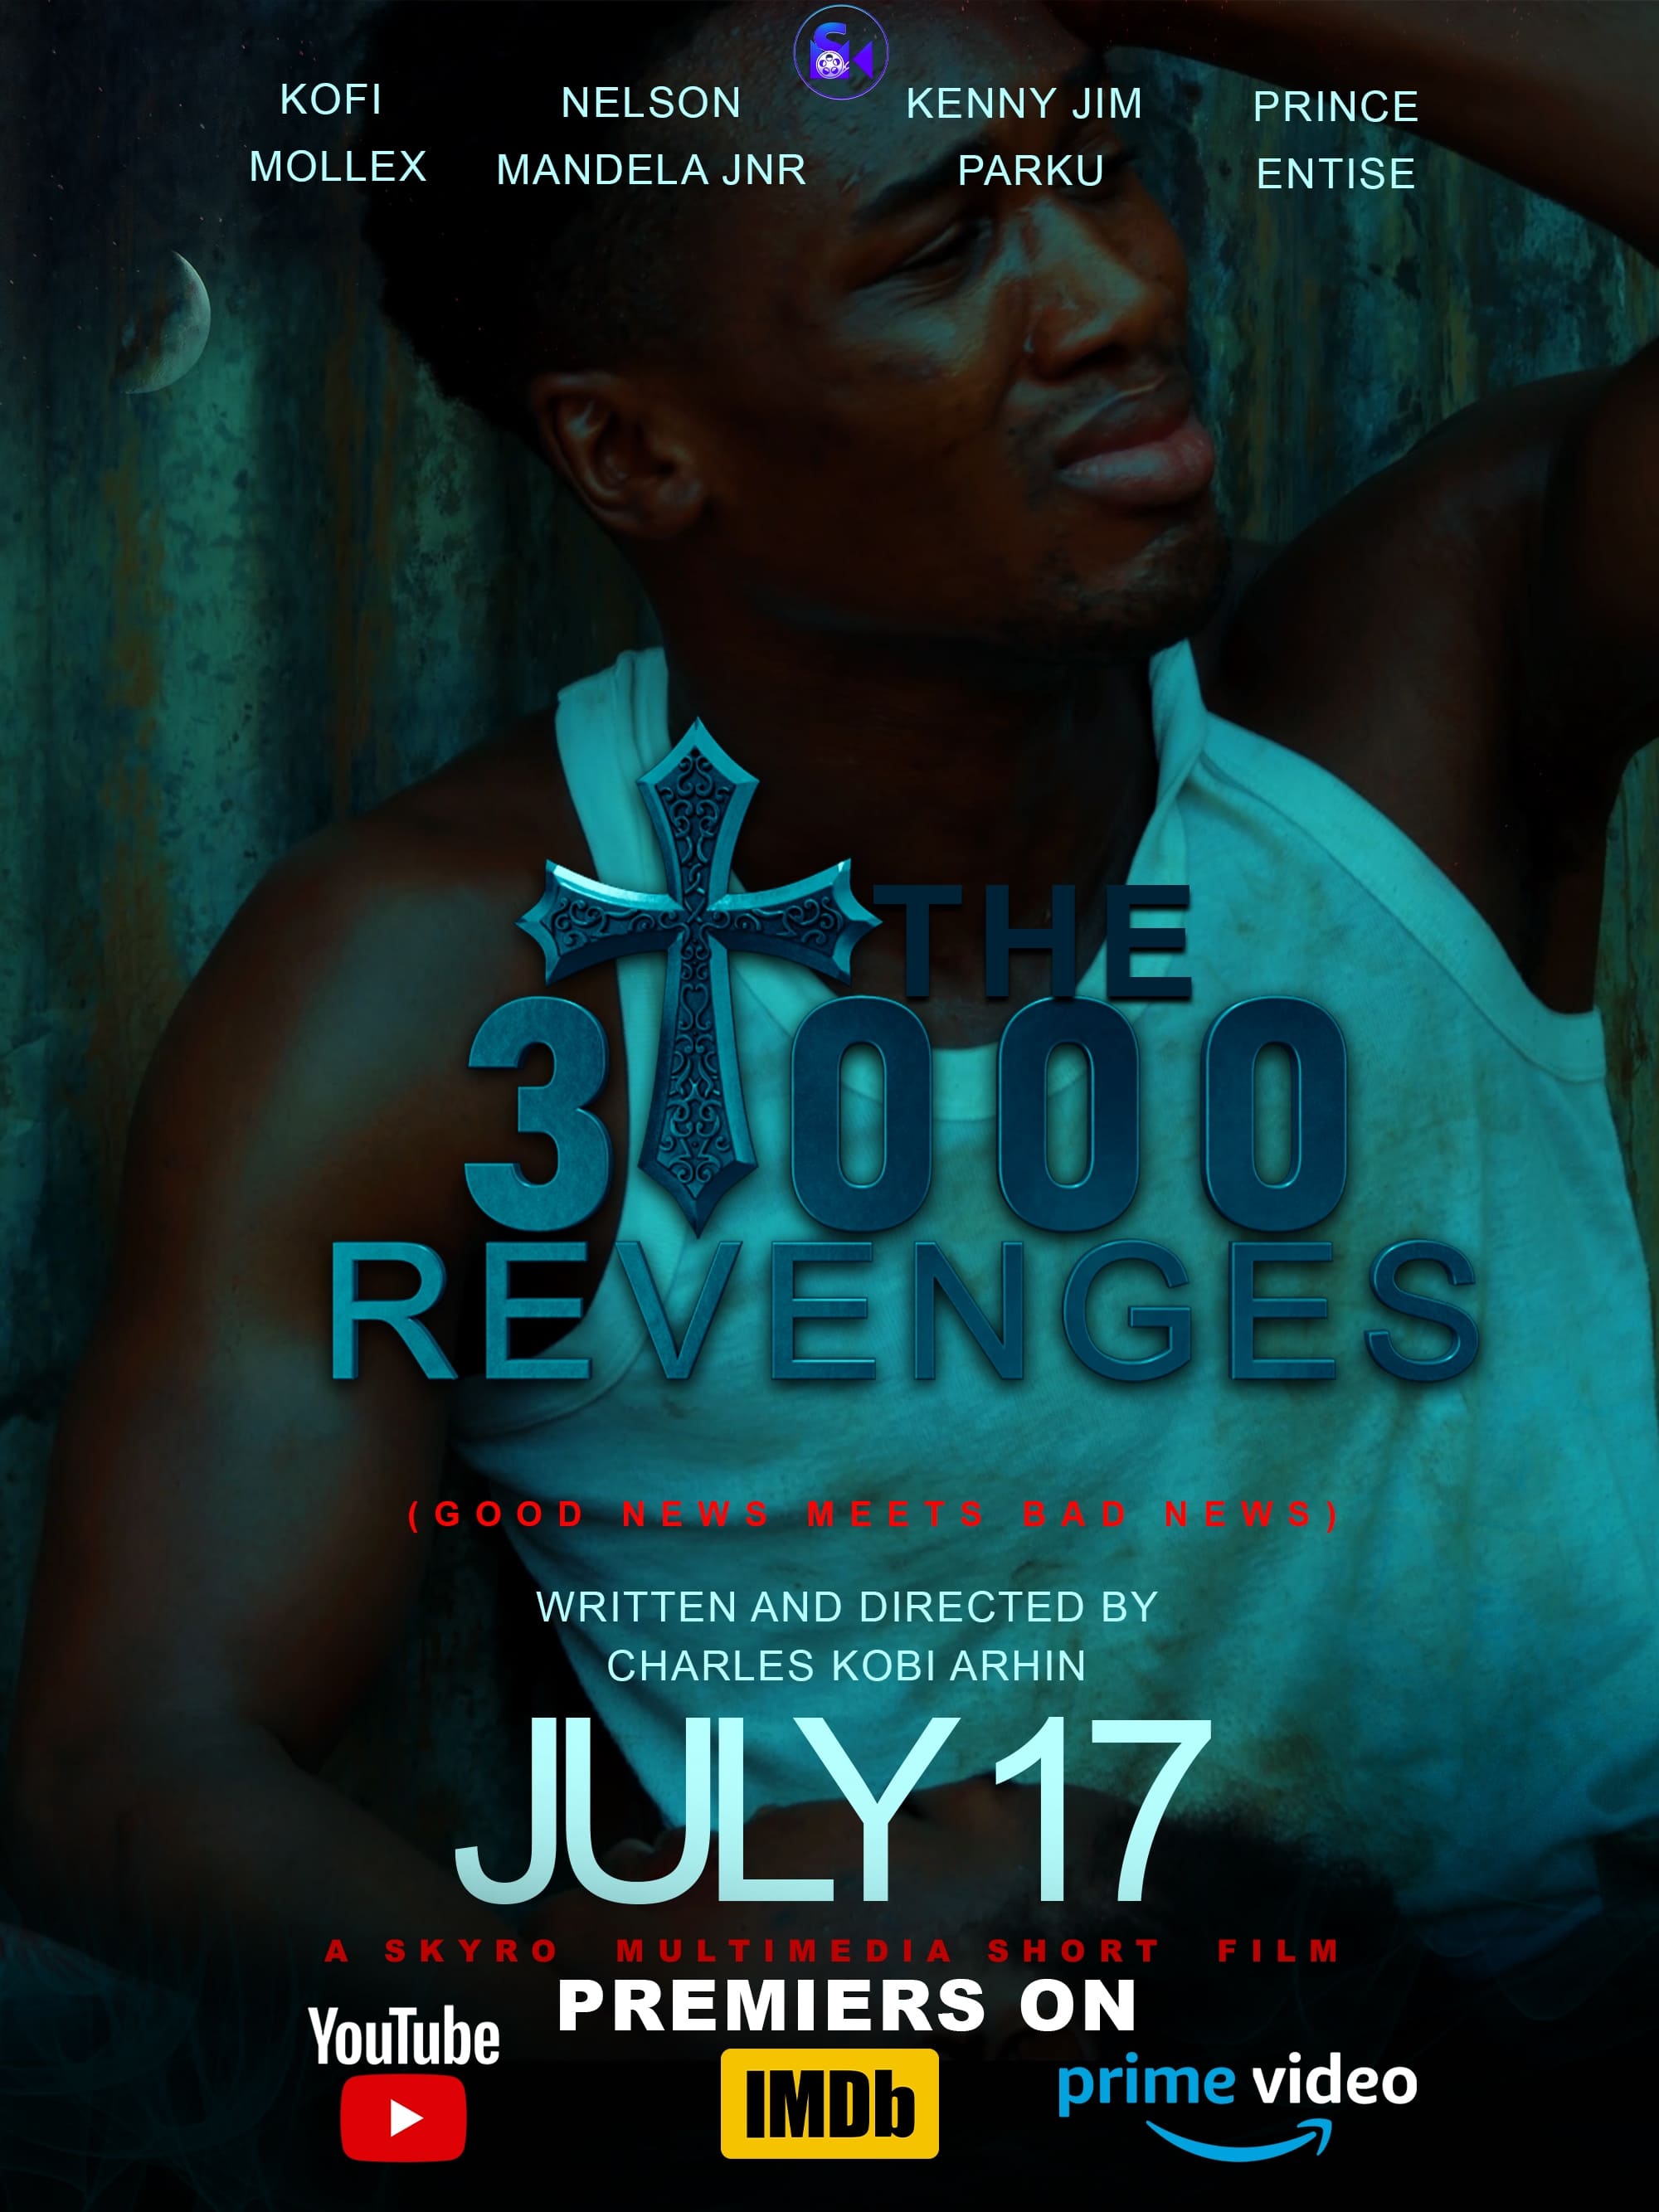 The 3,000 Revenges